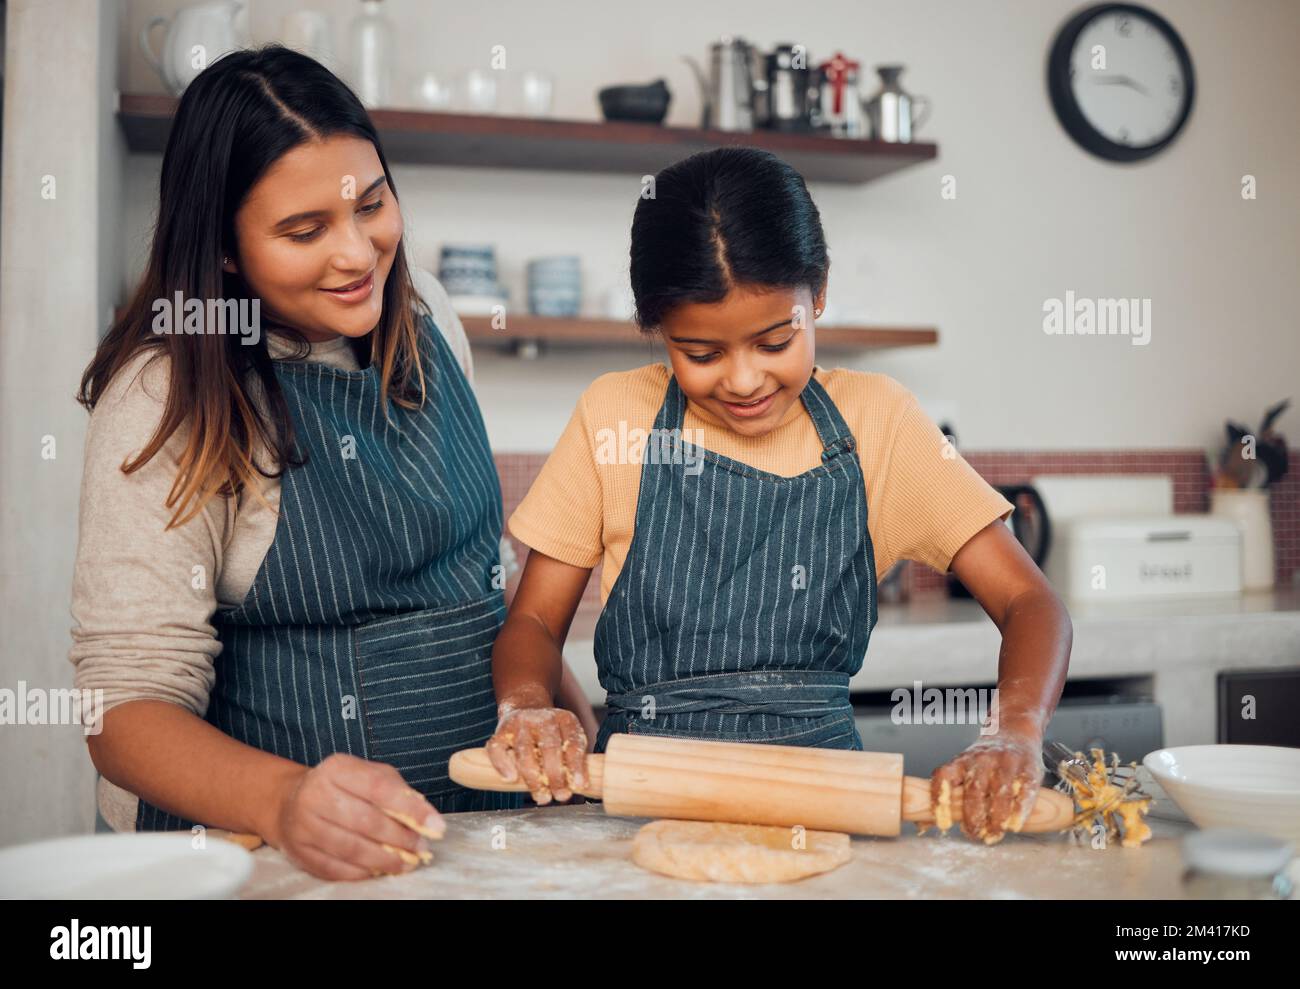 Boulanger familial, mère et fille avec une pâte à pain aidant à cuire un gâteau, de la nourriture ou des biscuits dans une cuisine maison. Développement de l'enfant, apprentissage ou heureux Banque D'Images